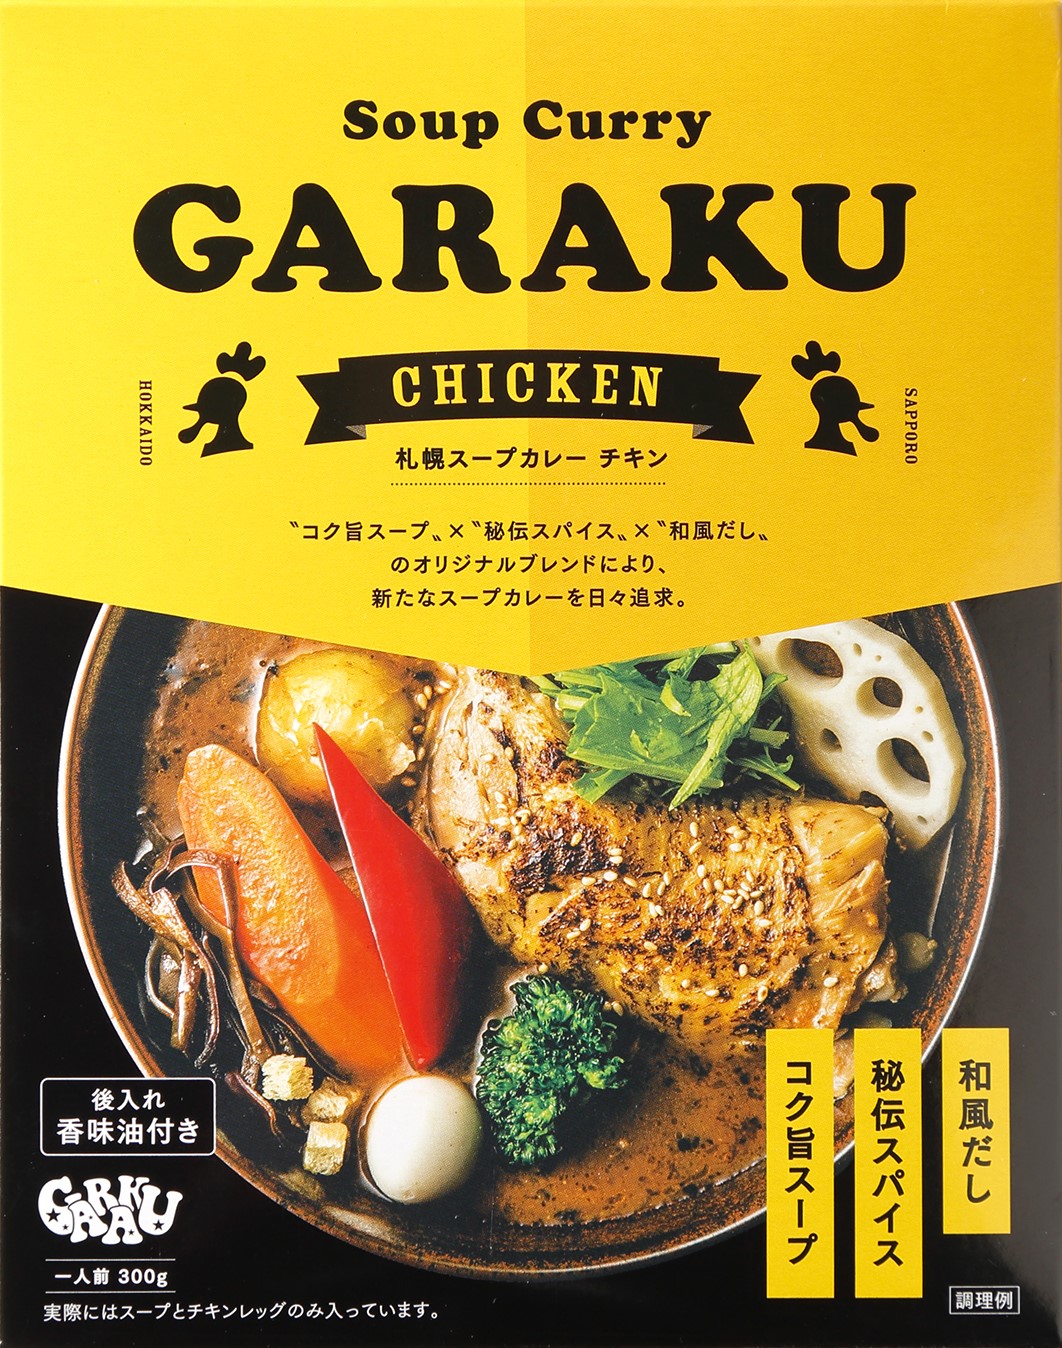 札幌スープカレー・ガラクチキン